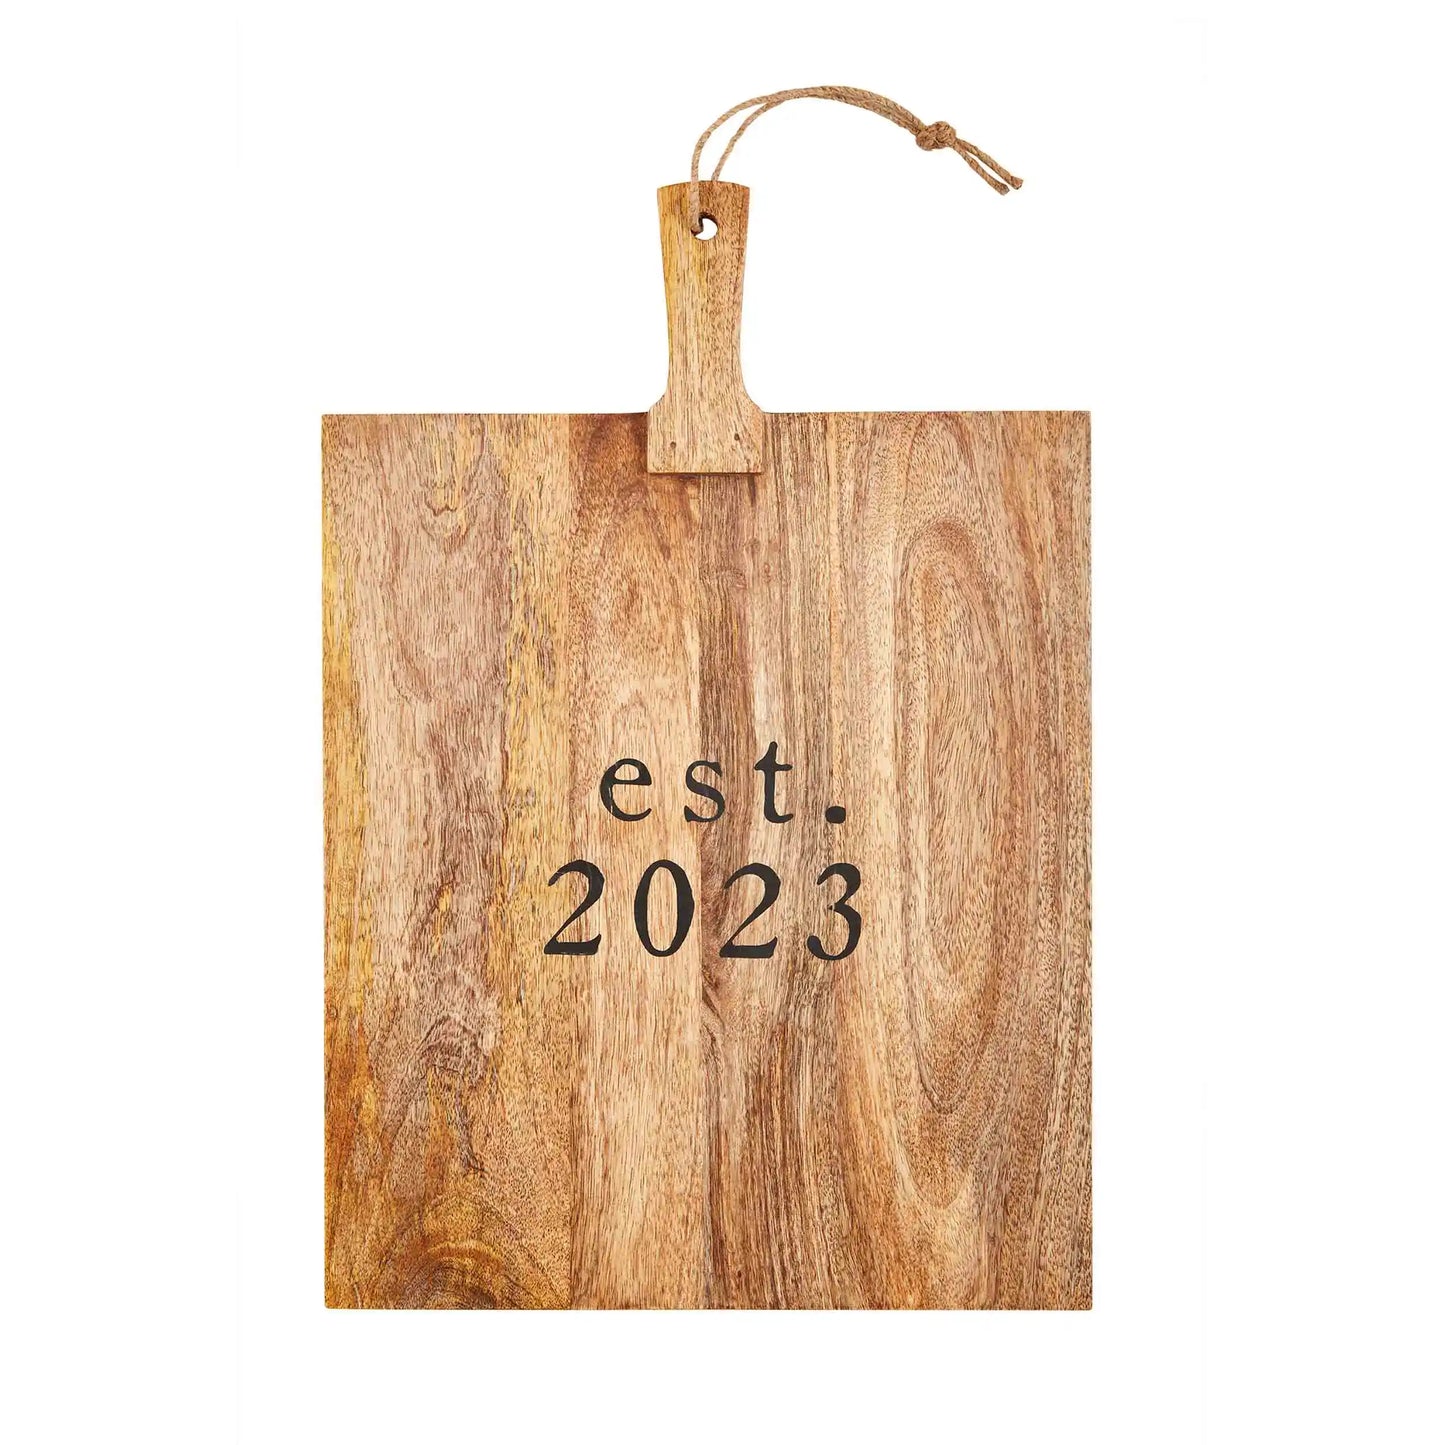 Est. 2023 Board